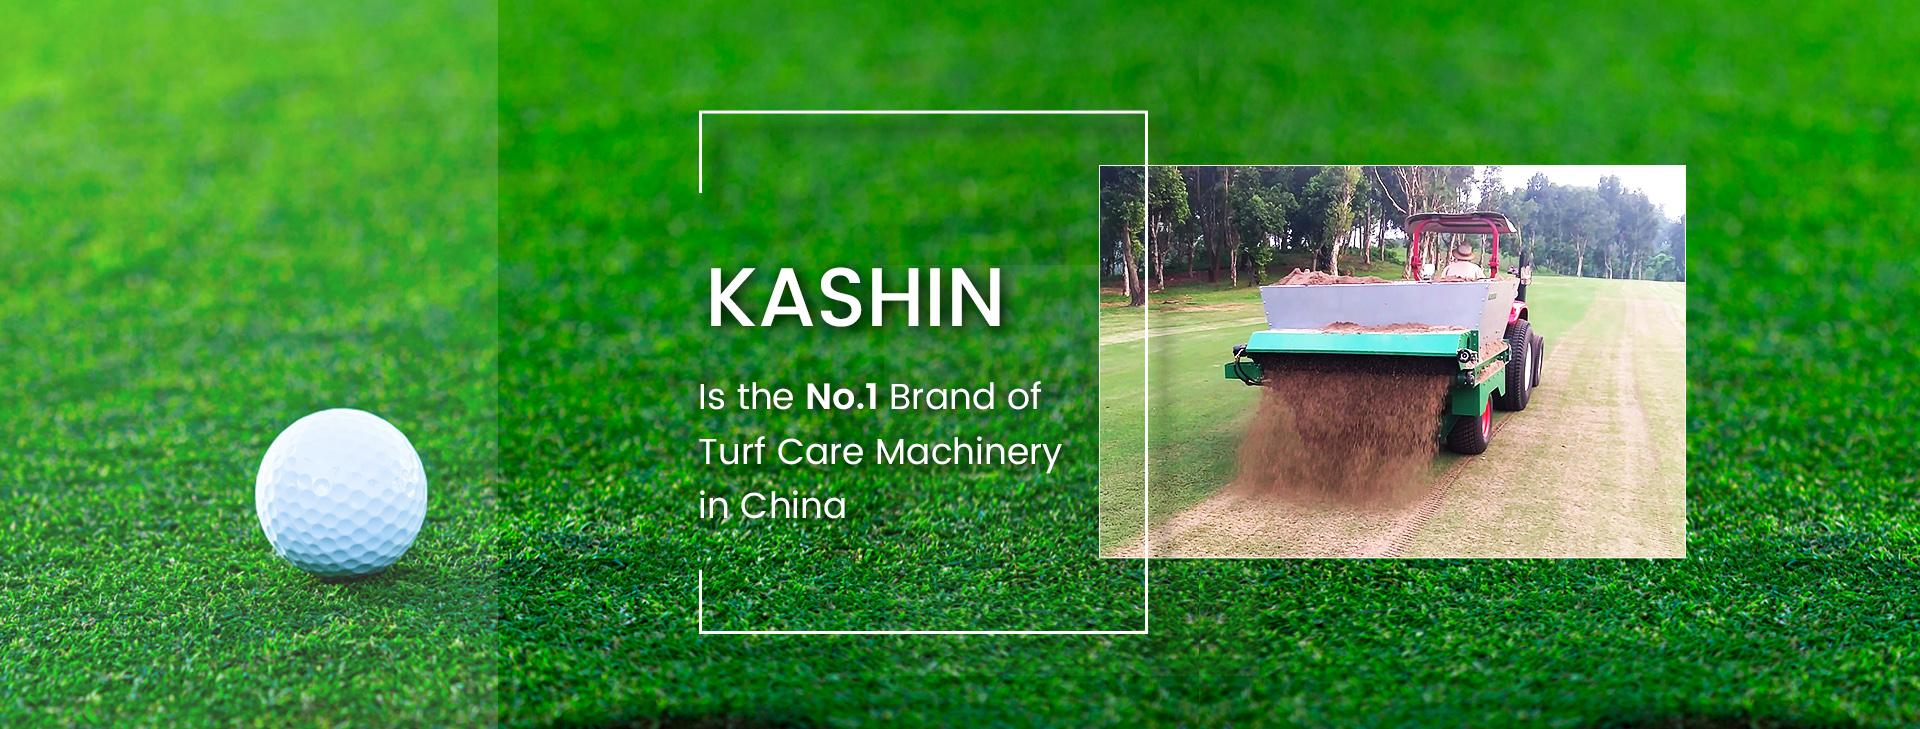 K ASHIN เป็นแบรนด์เครื่องจักรดูแลสนามหญ้าอันดับ 1 ในประเทศจีน